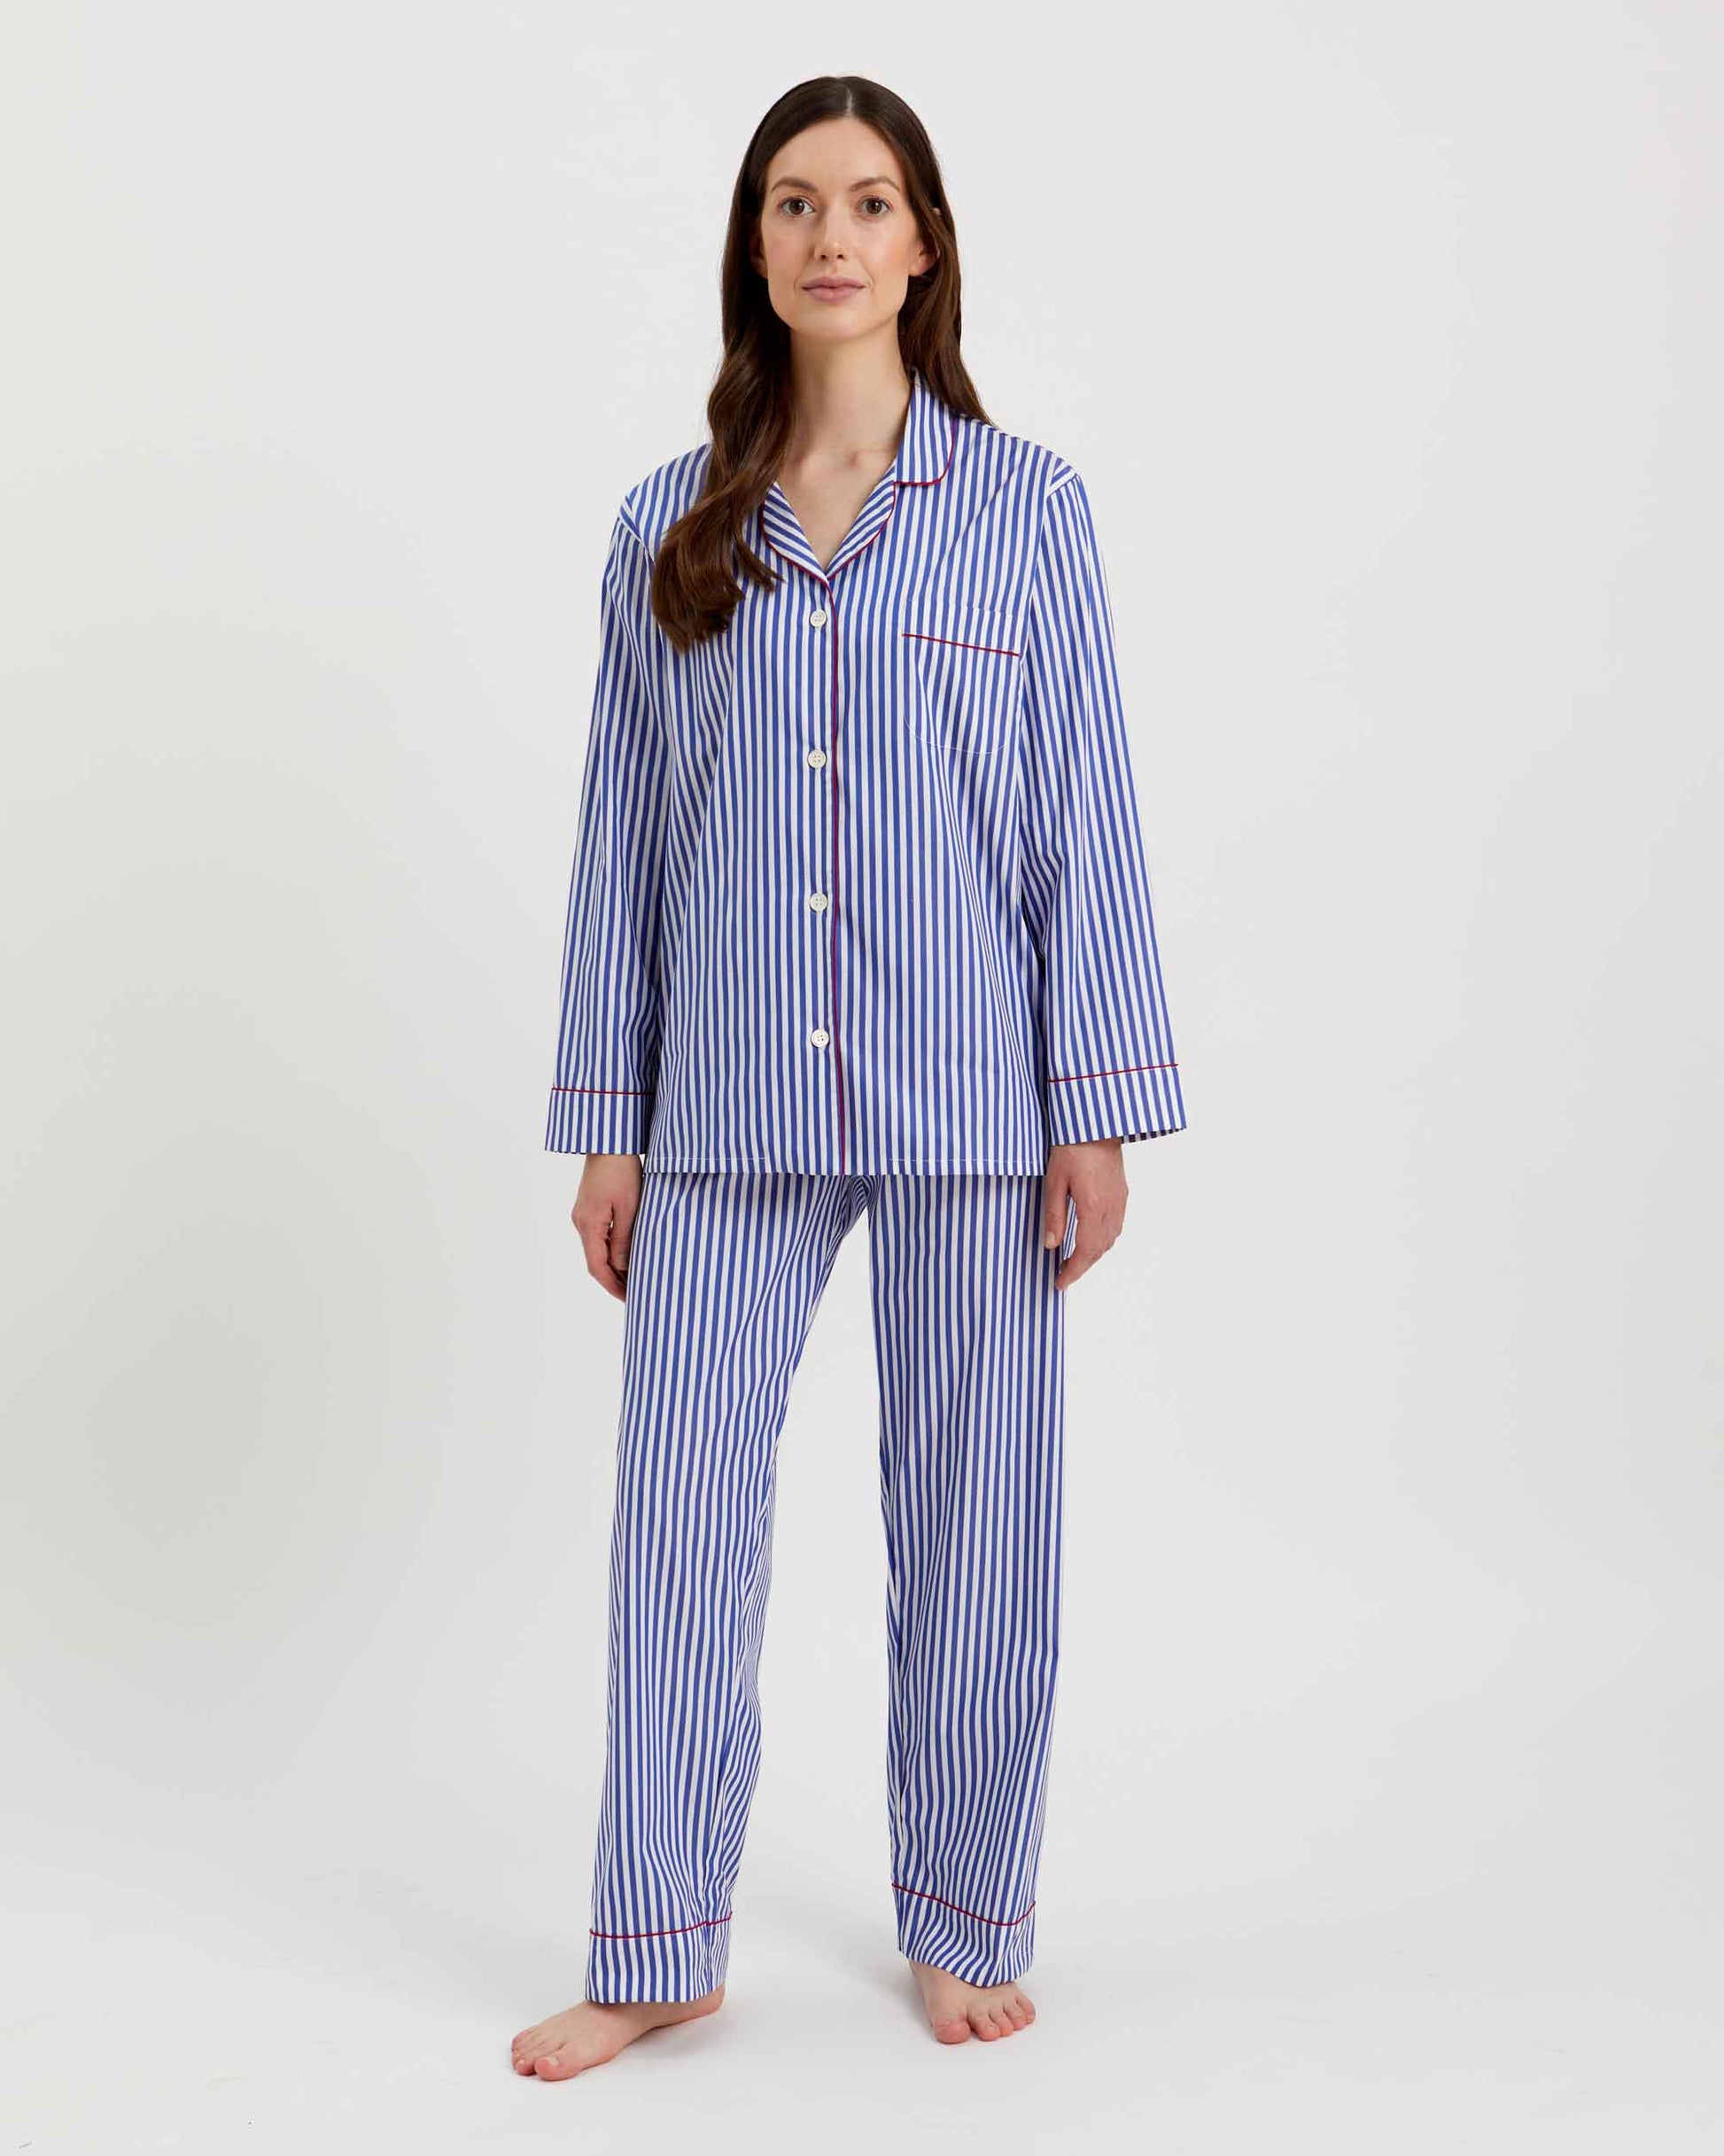 Loungewear Set Oxford Stripe 100% Cotton - Bella Babe by SK Nightsuit-Nightdress-Robes-Silk-Satin-Nighty-Gown-Nightwear-Shorts-Pajamas-Nightsuit-for-women-men-bathrobe-Satin-dress-cotton- 